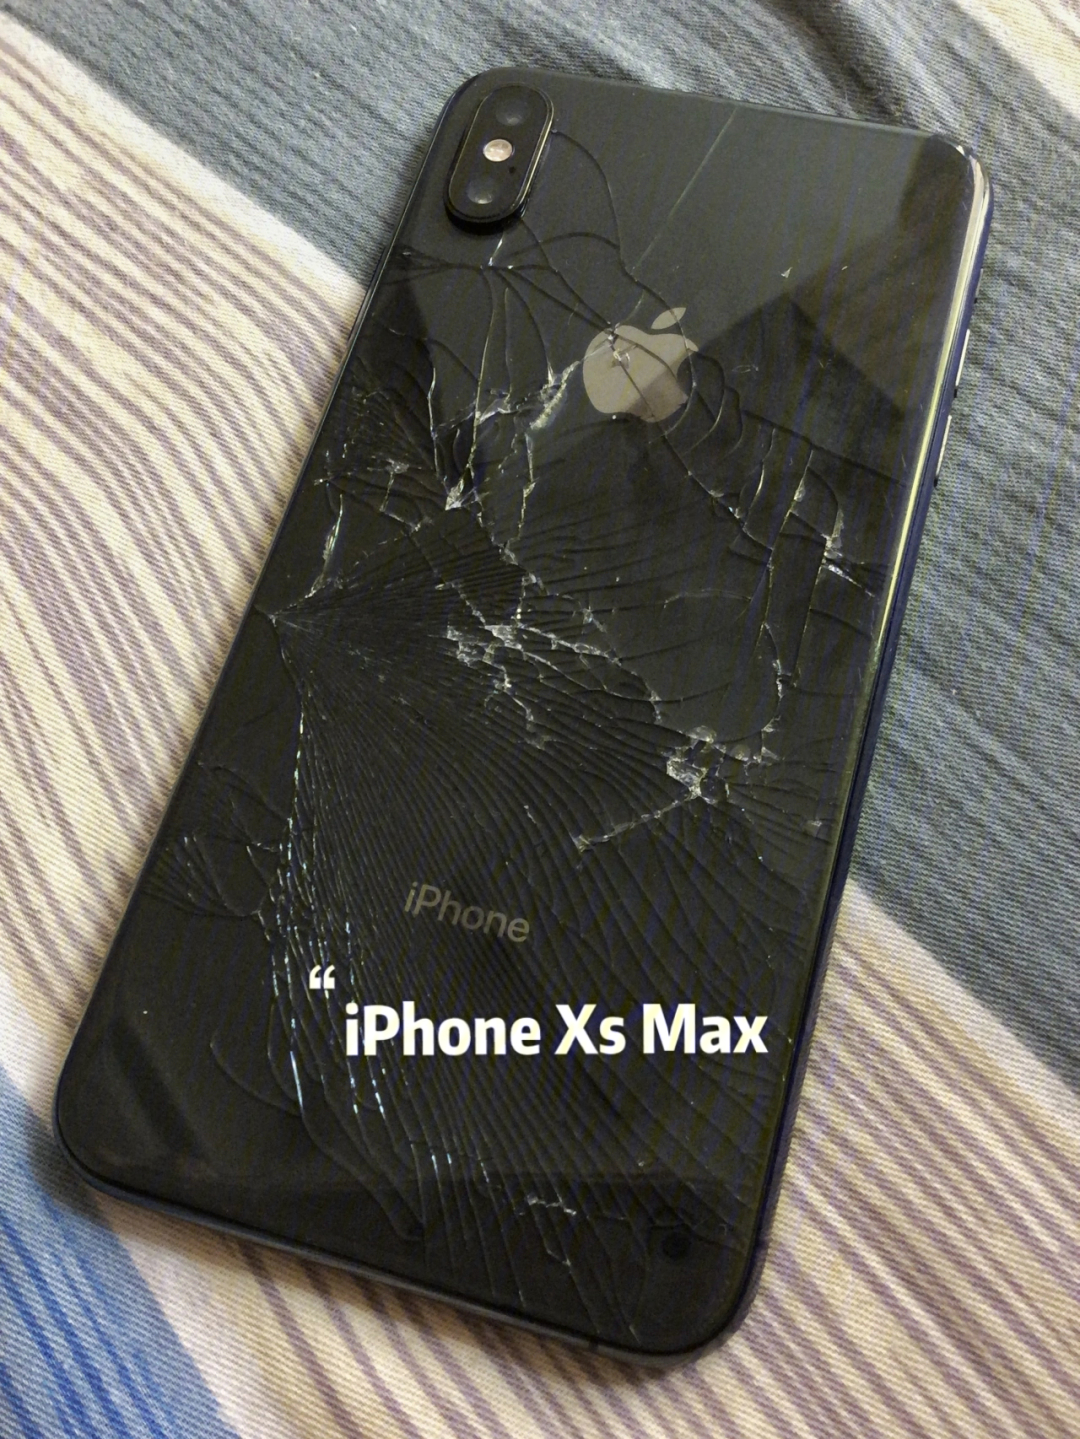 图一是早上起床掀被子从床上掉下去的iphone xs max,当时买了苹果官方